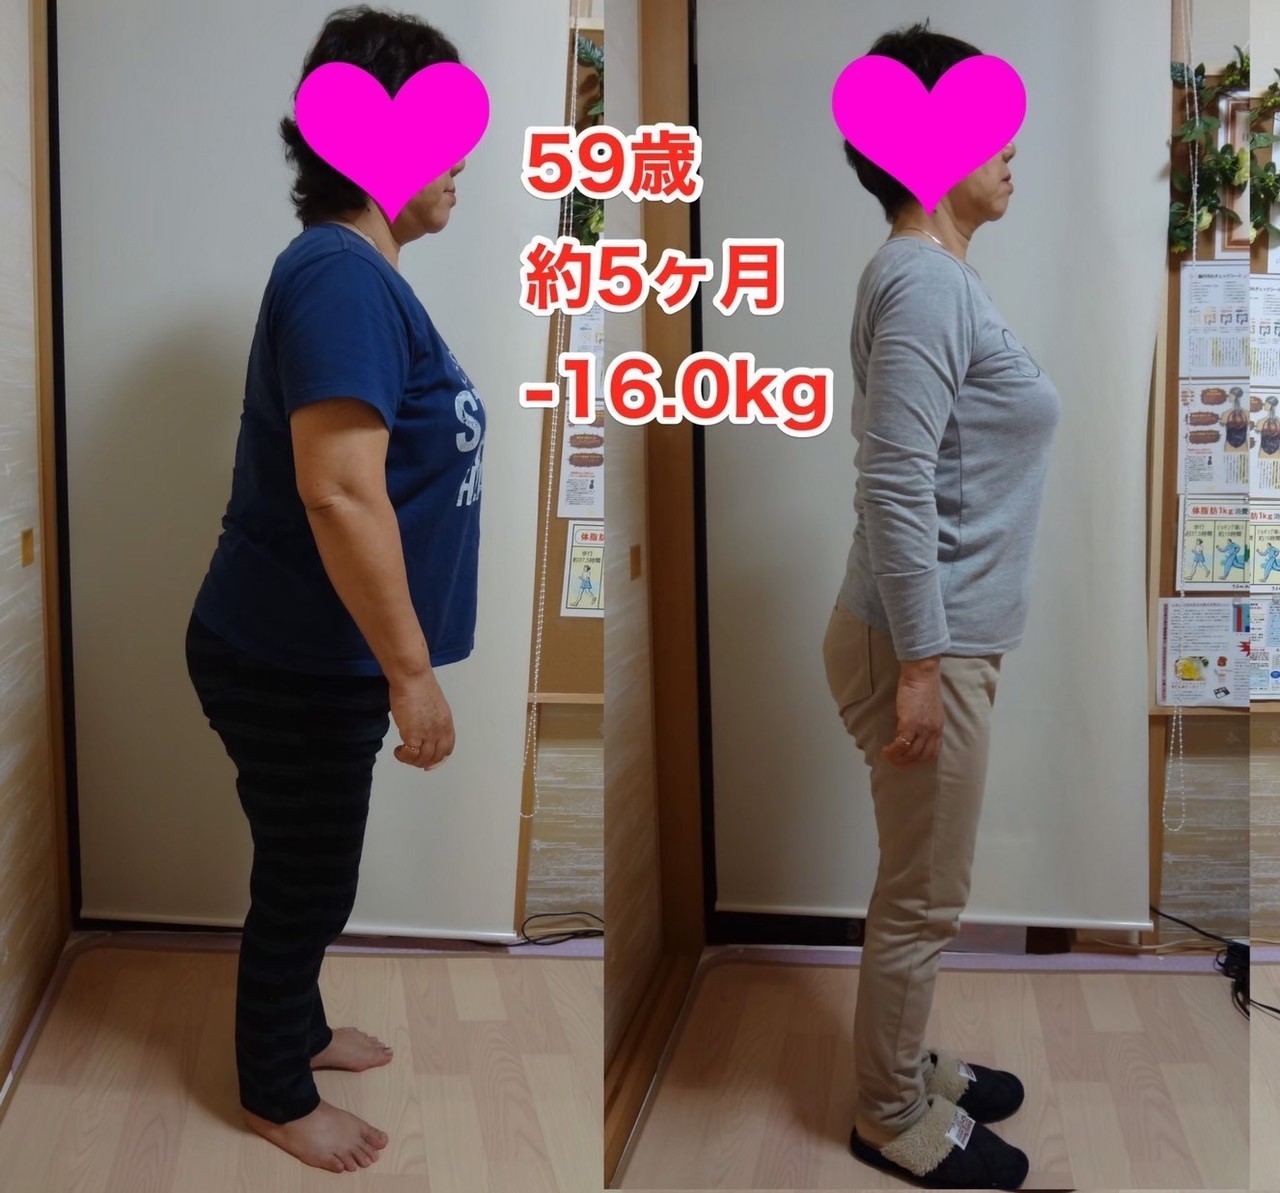 浦和でダイエット体重を落としたい